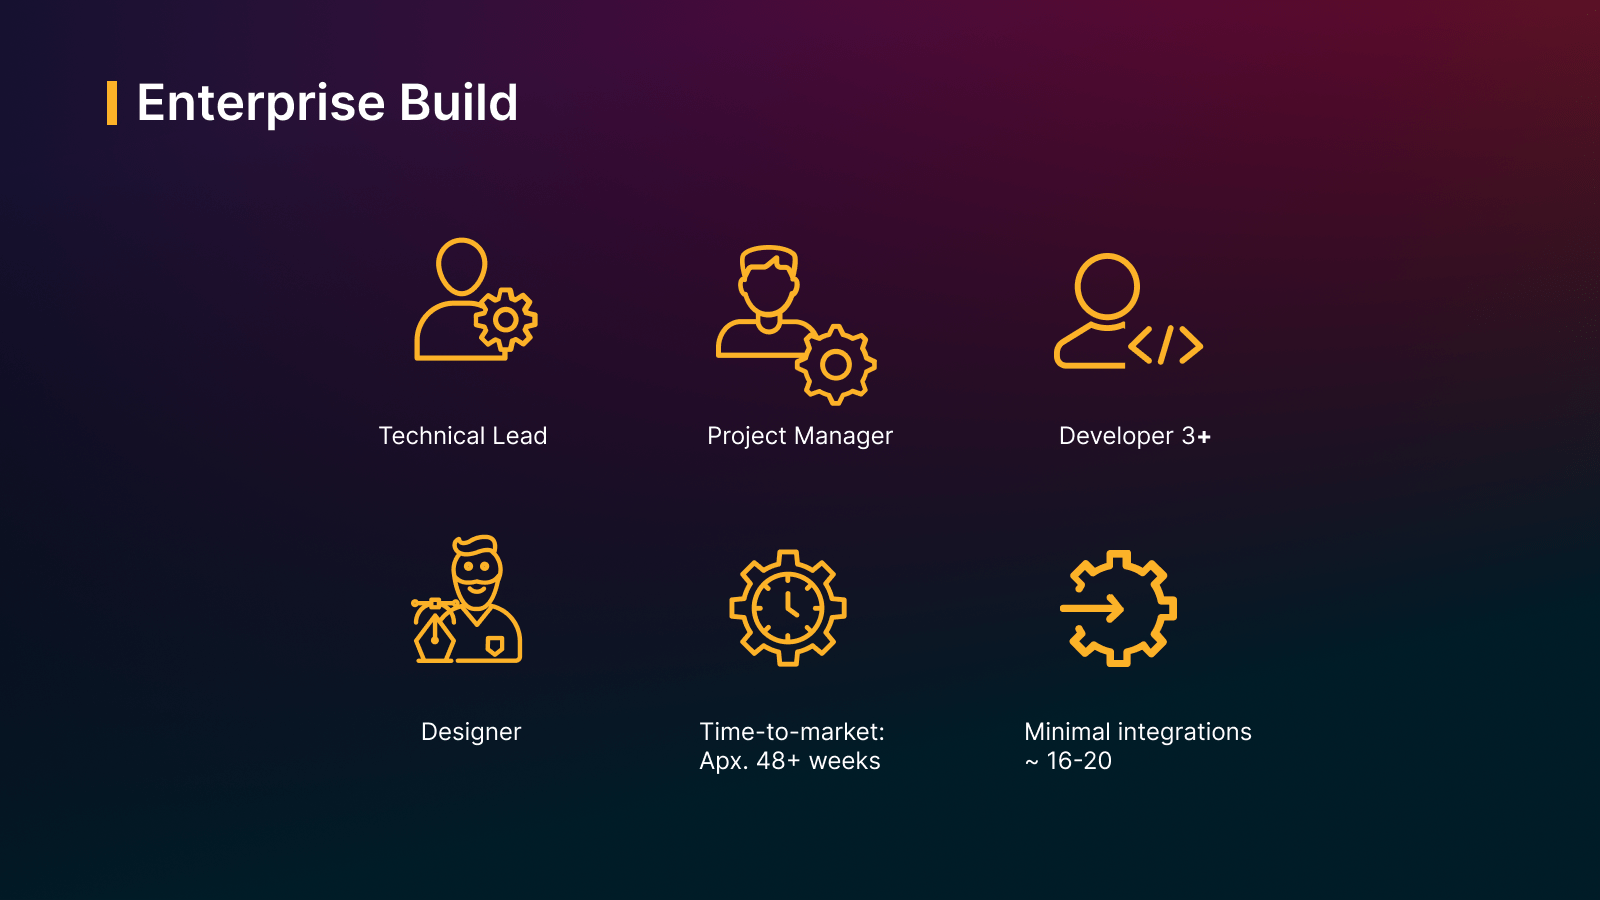 Enterprise Build